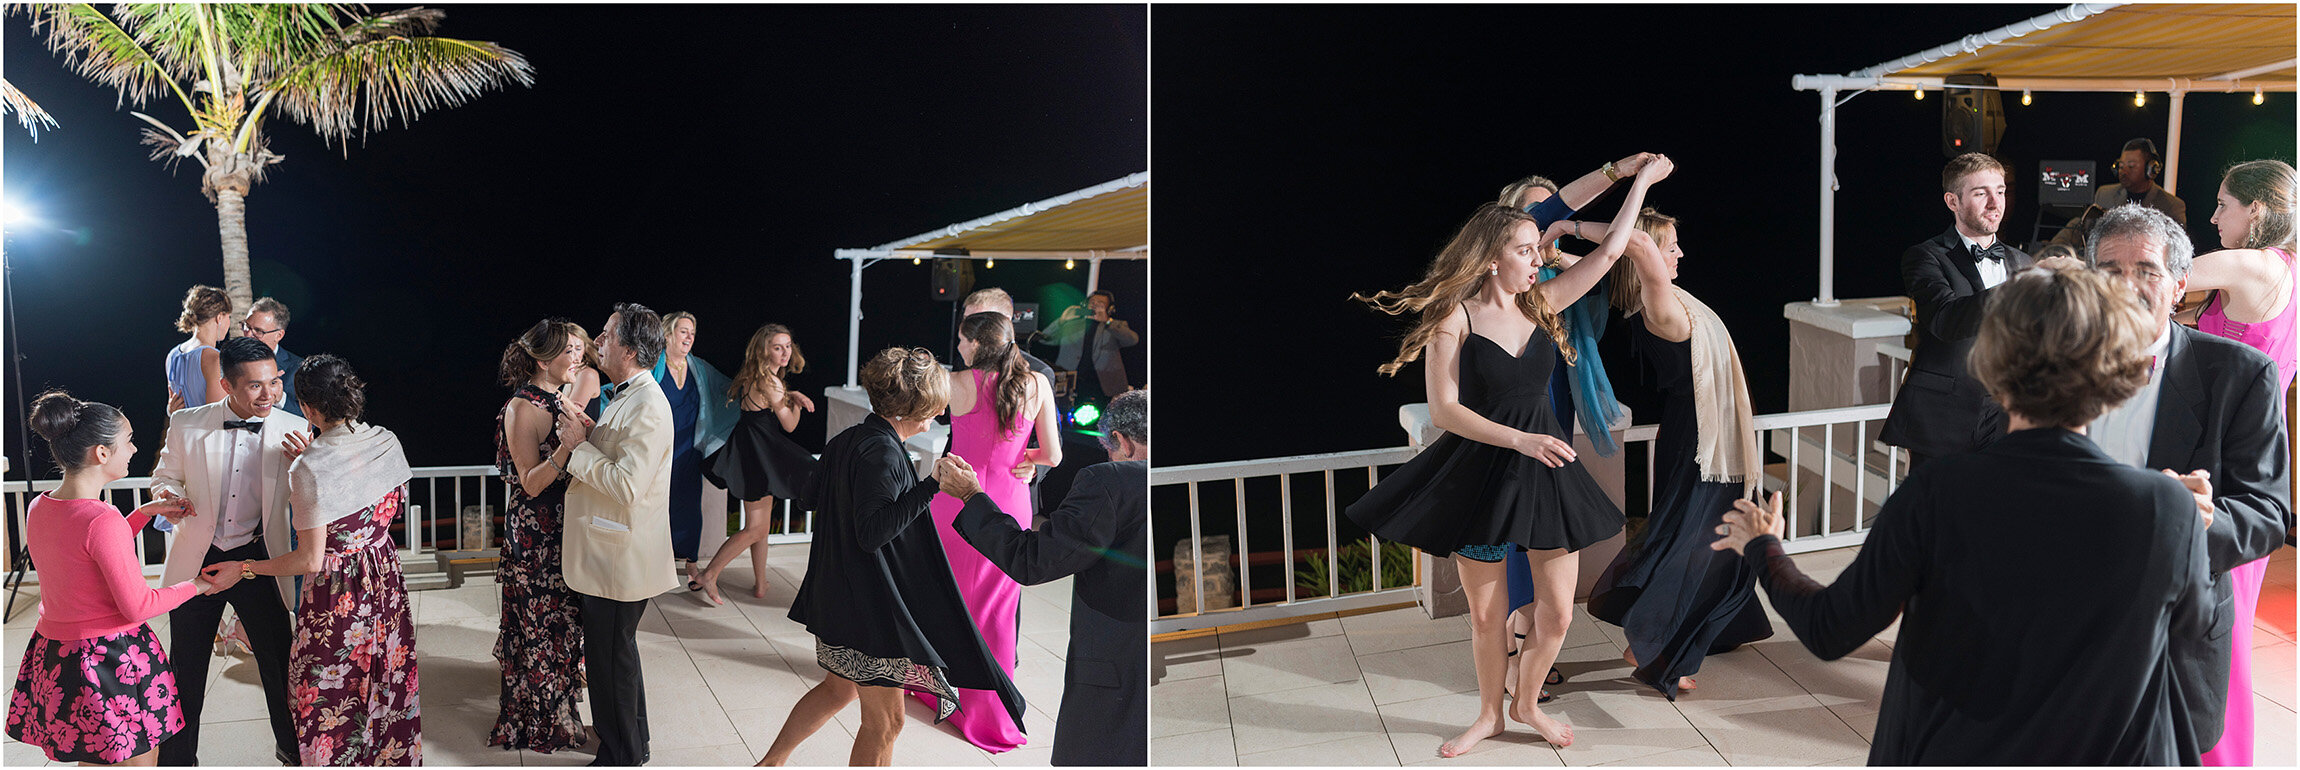 ©FianderFoto_Coral Beach Club_Bermuda_Wedding_CM_091.jpg